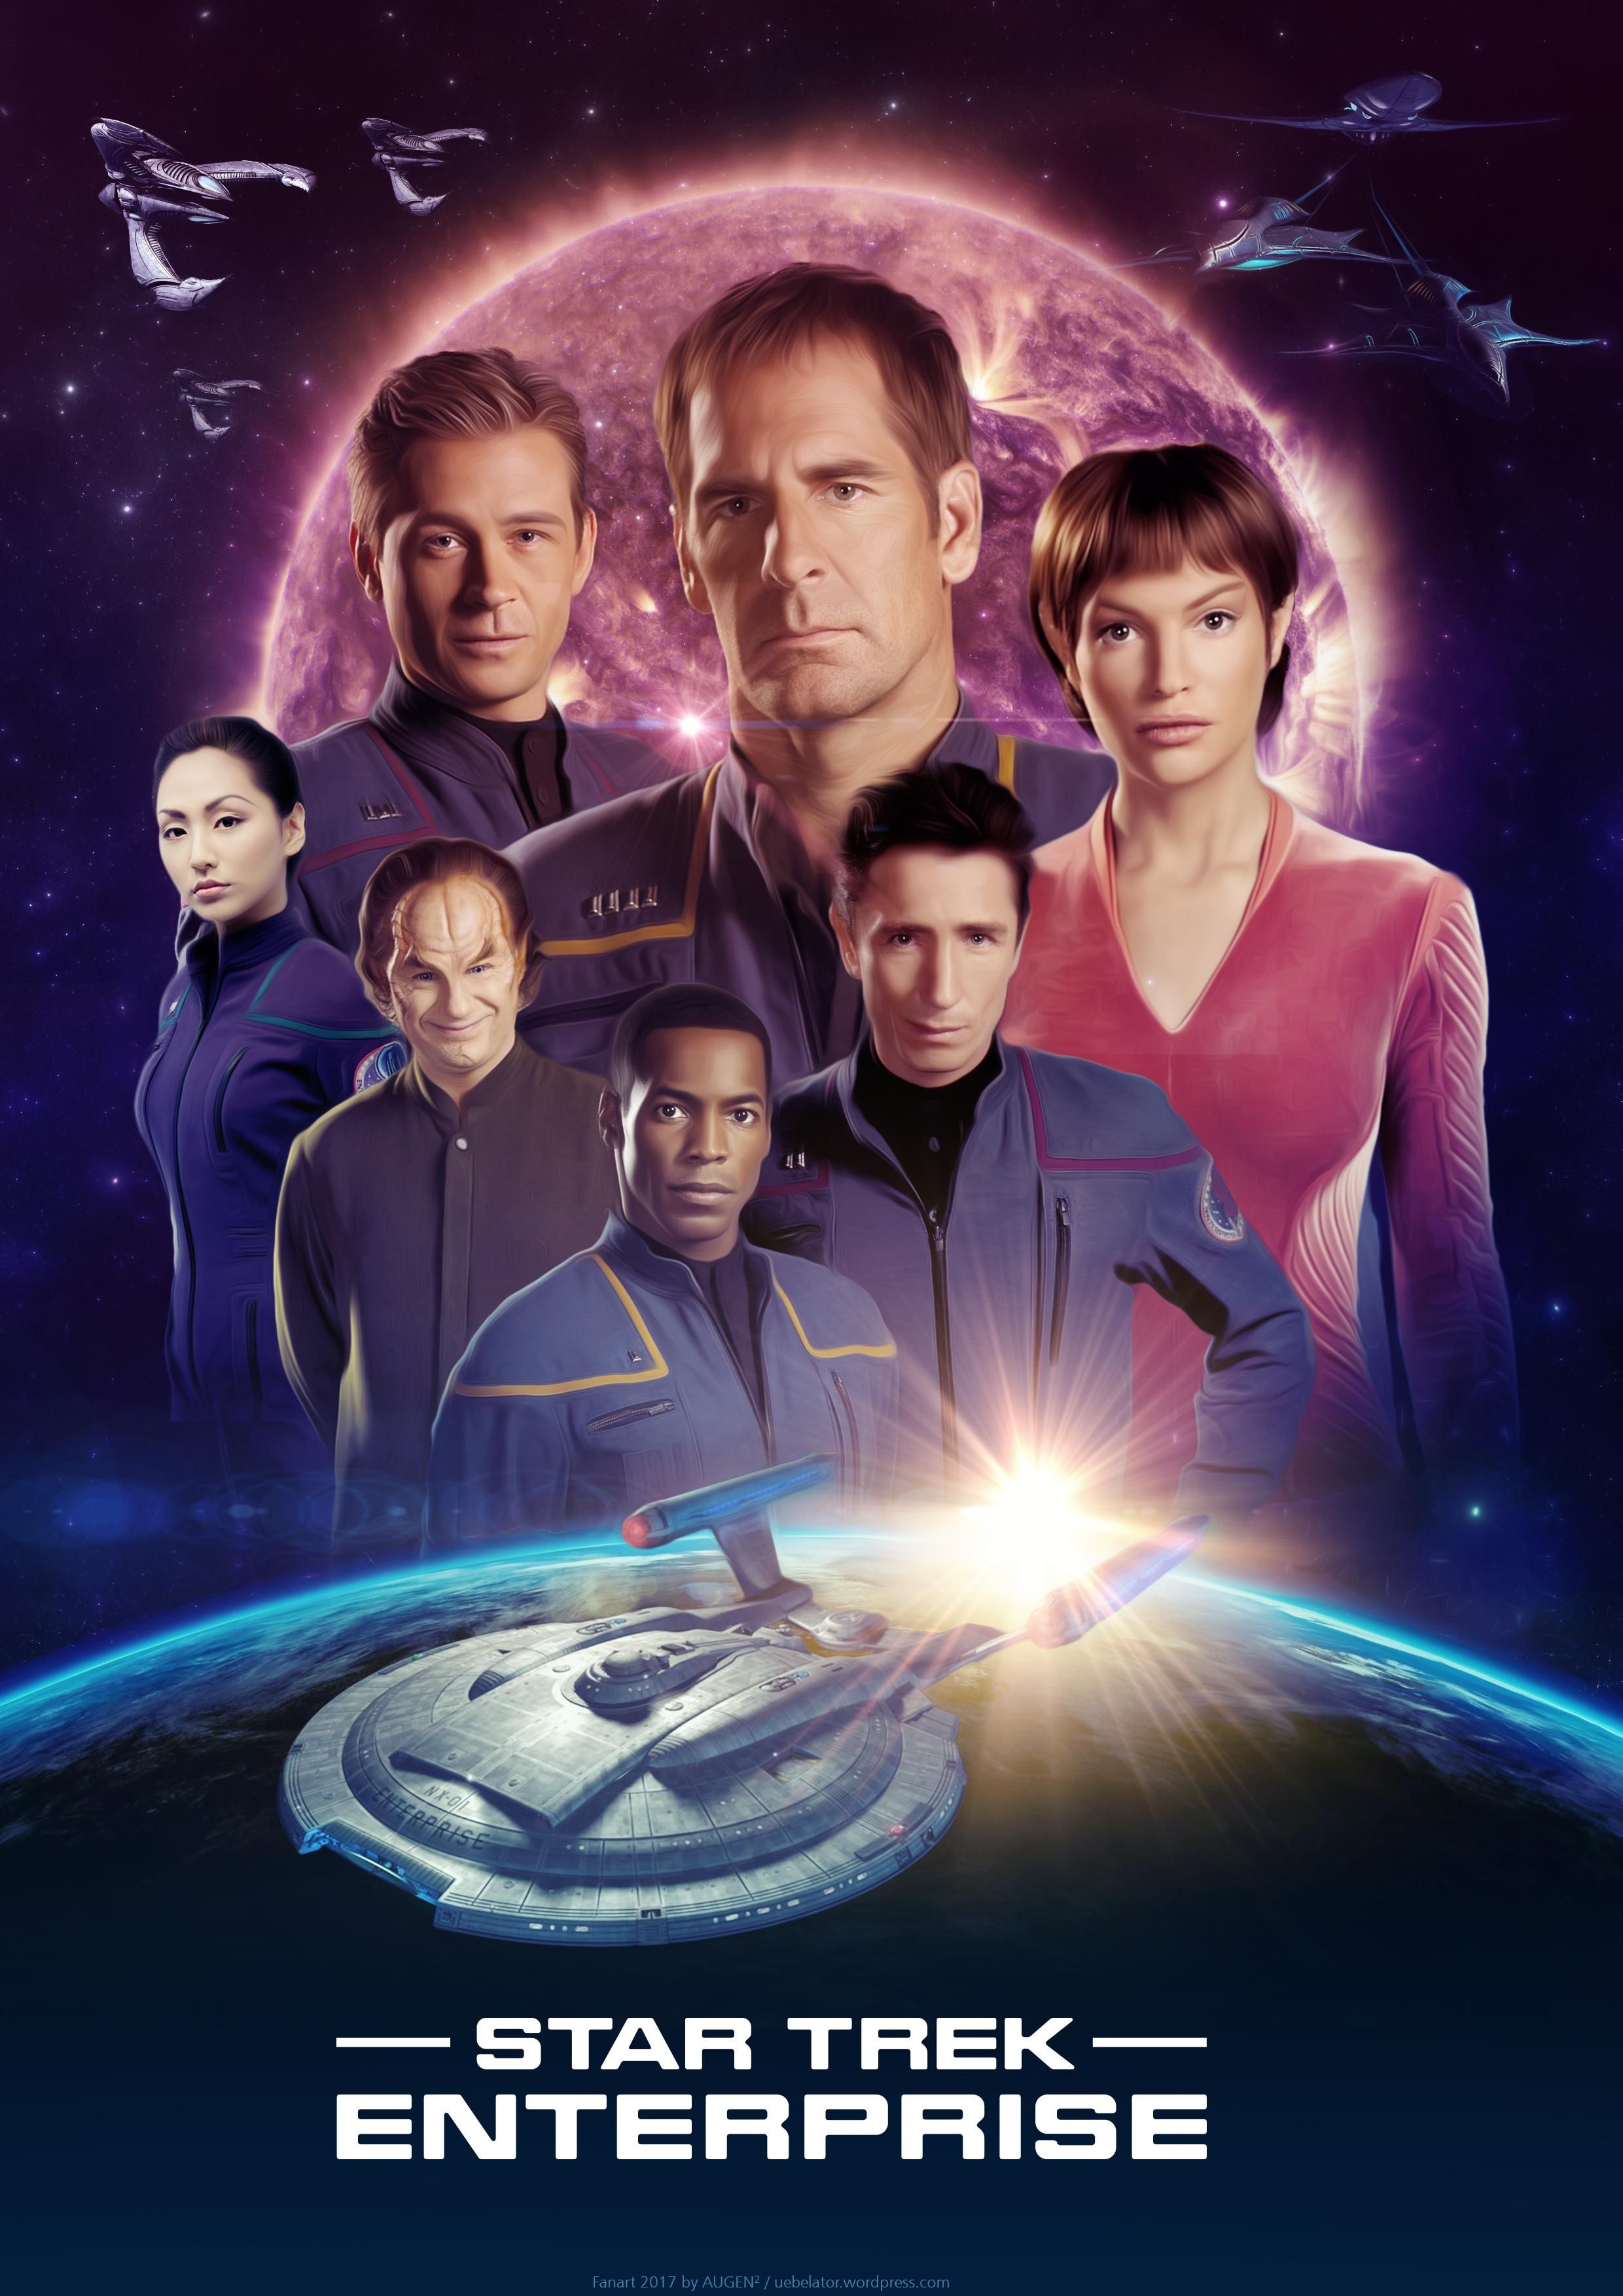 Star Trek Enterprise TV Show Poster